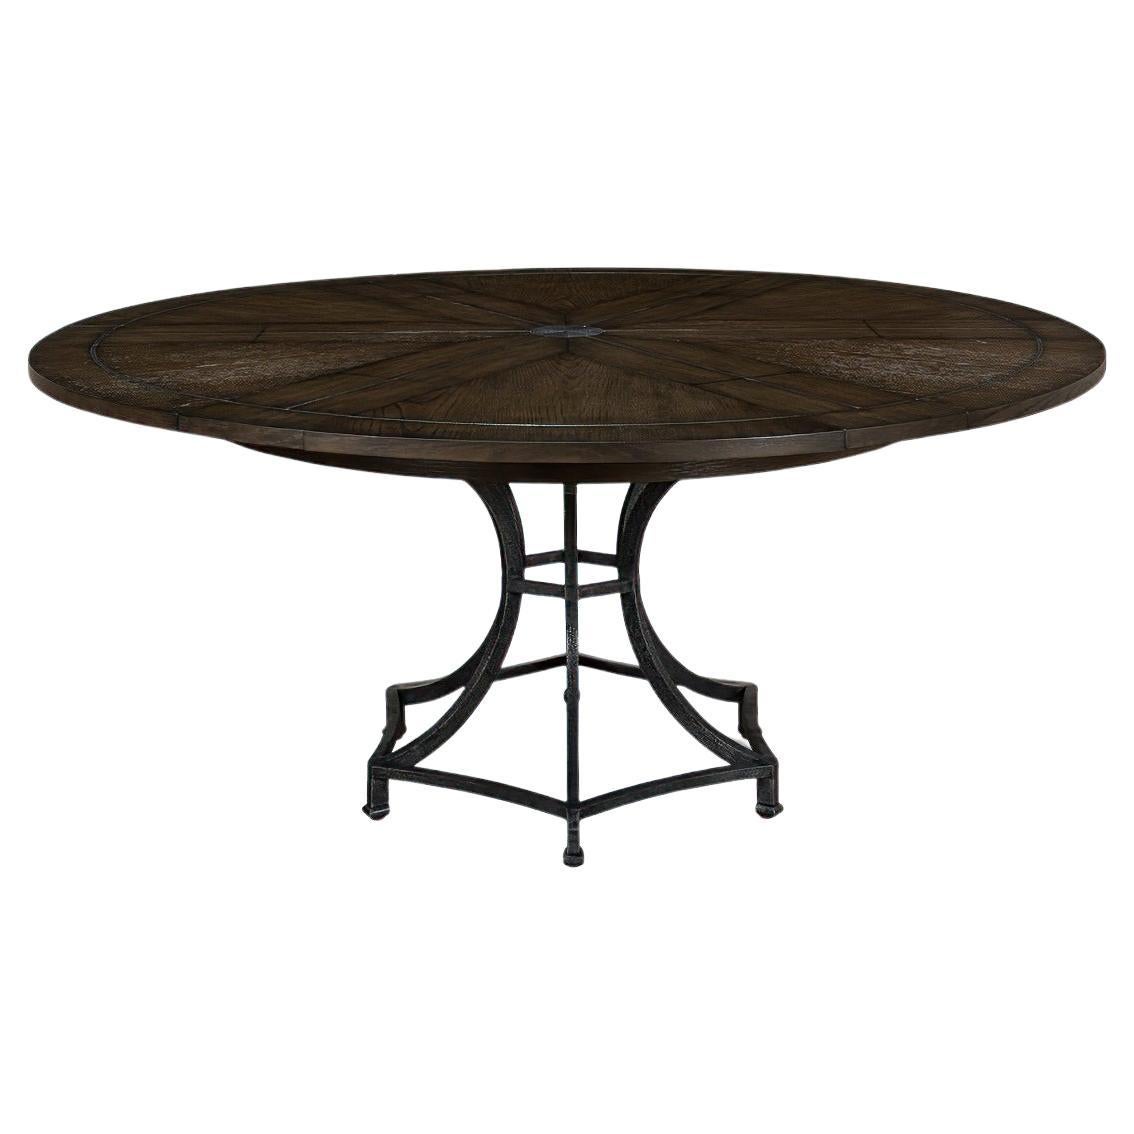 Table de salle à manger industrielle ronde moderne et moderne, chêne foncé